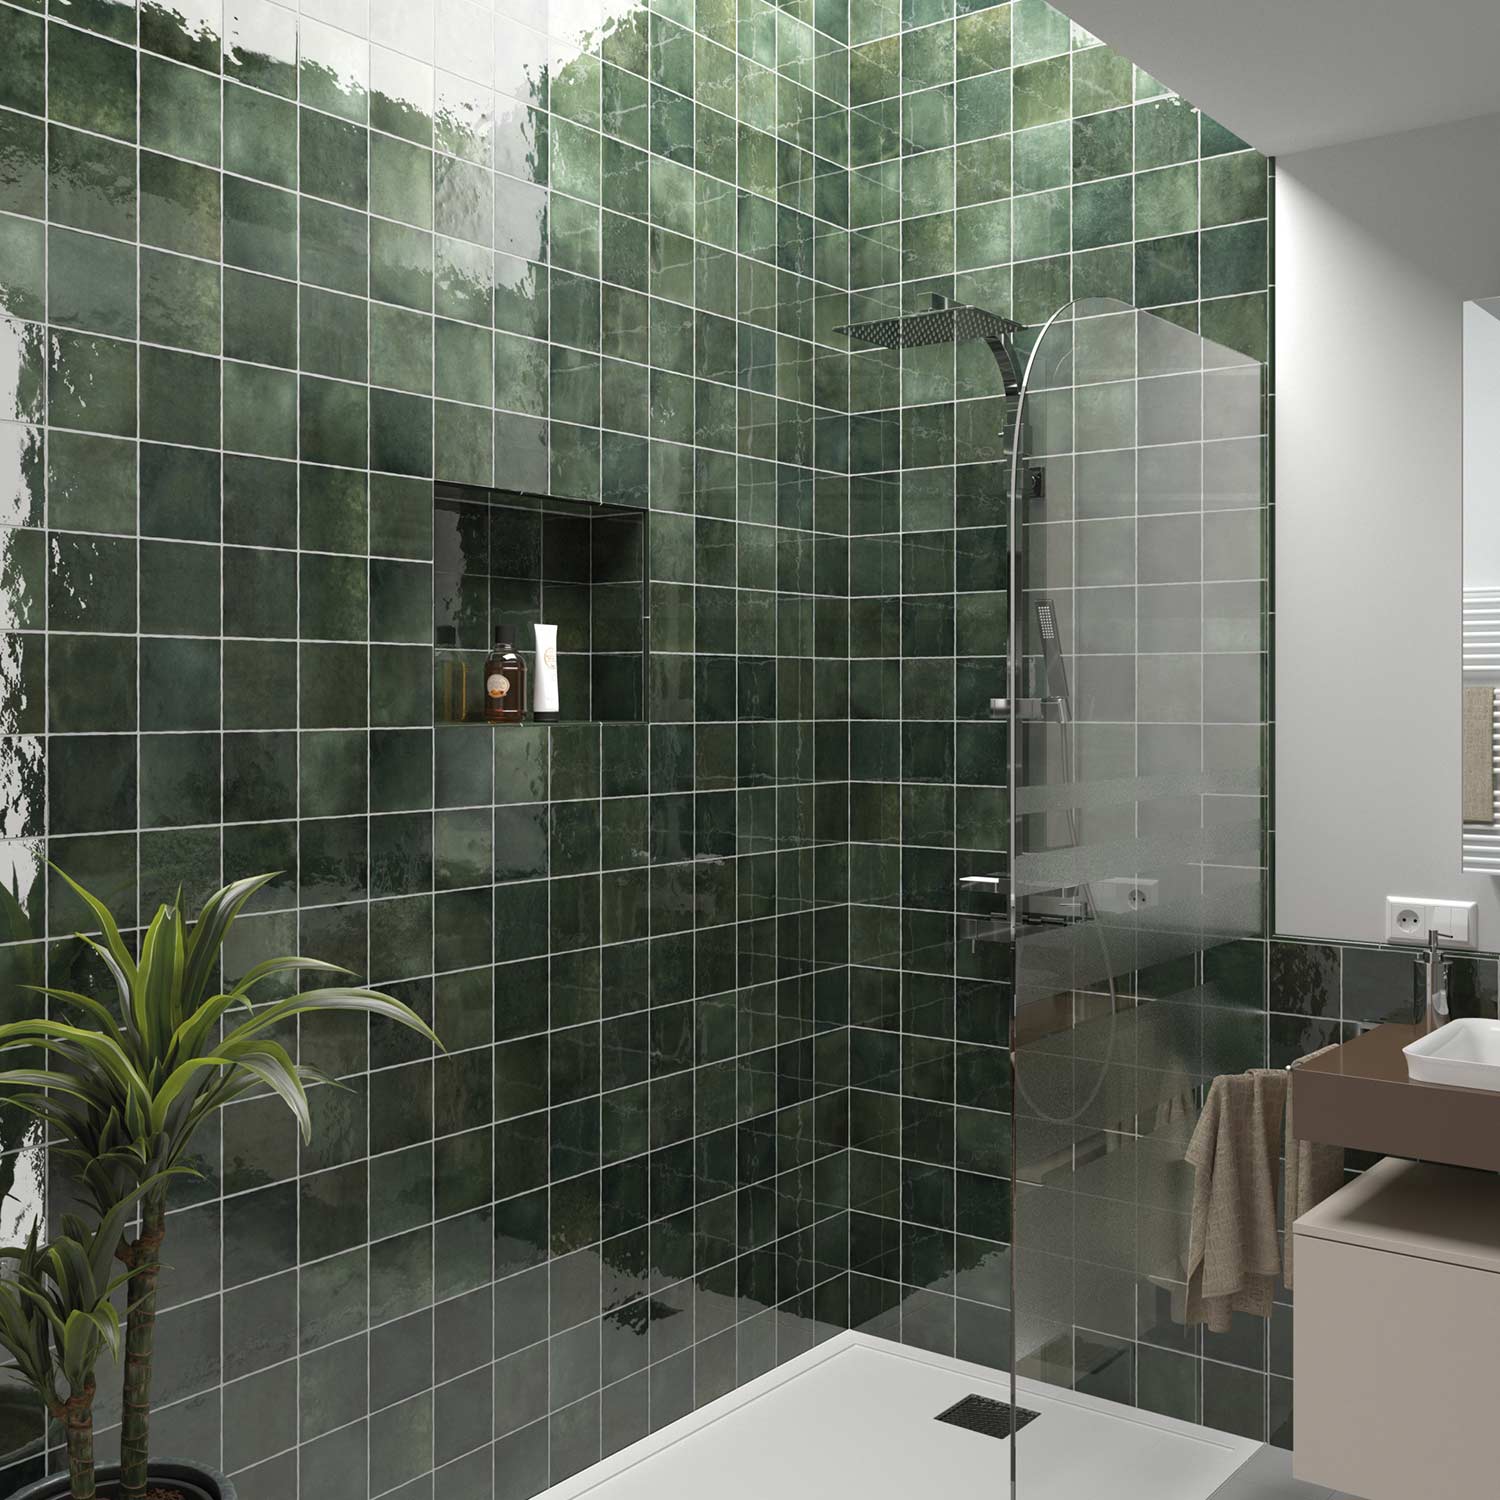 Carrelage zellige marocain vert dans salle de bain